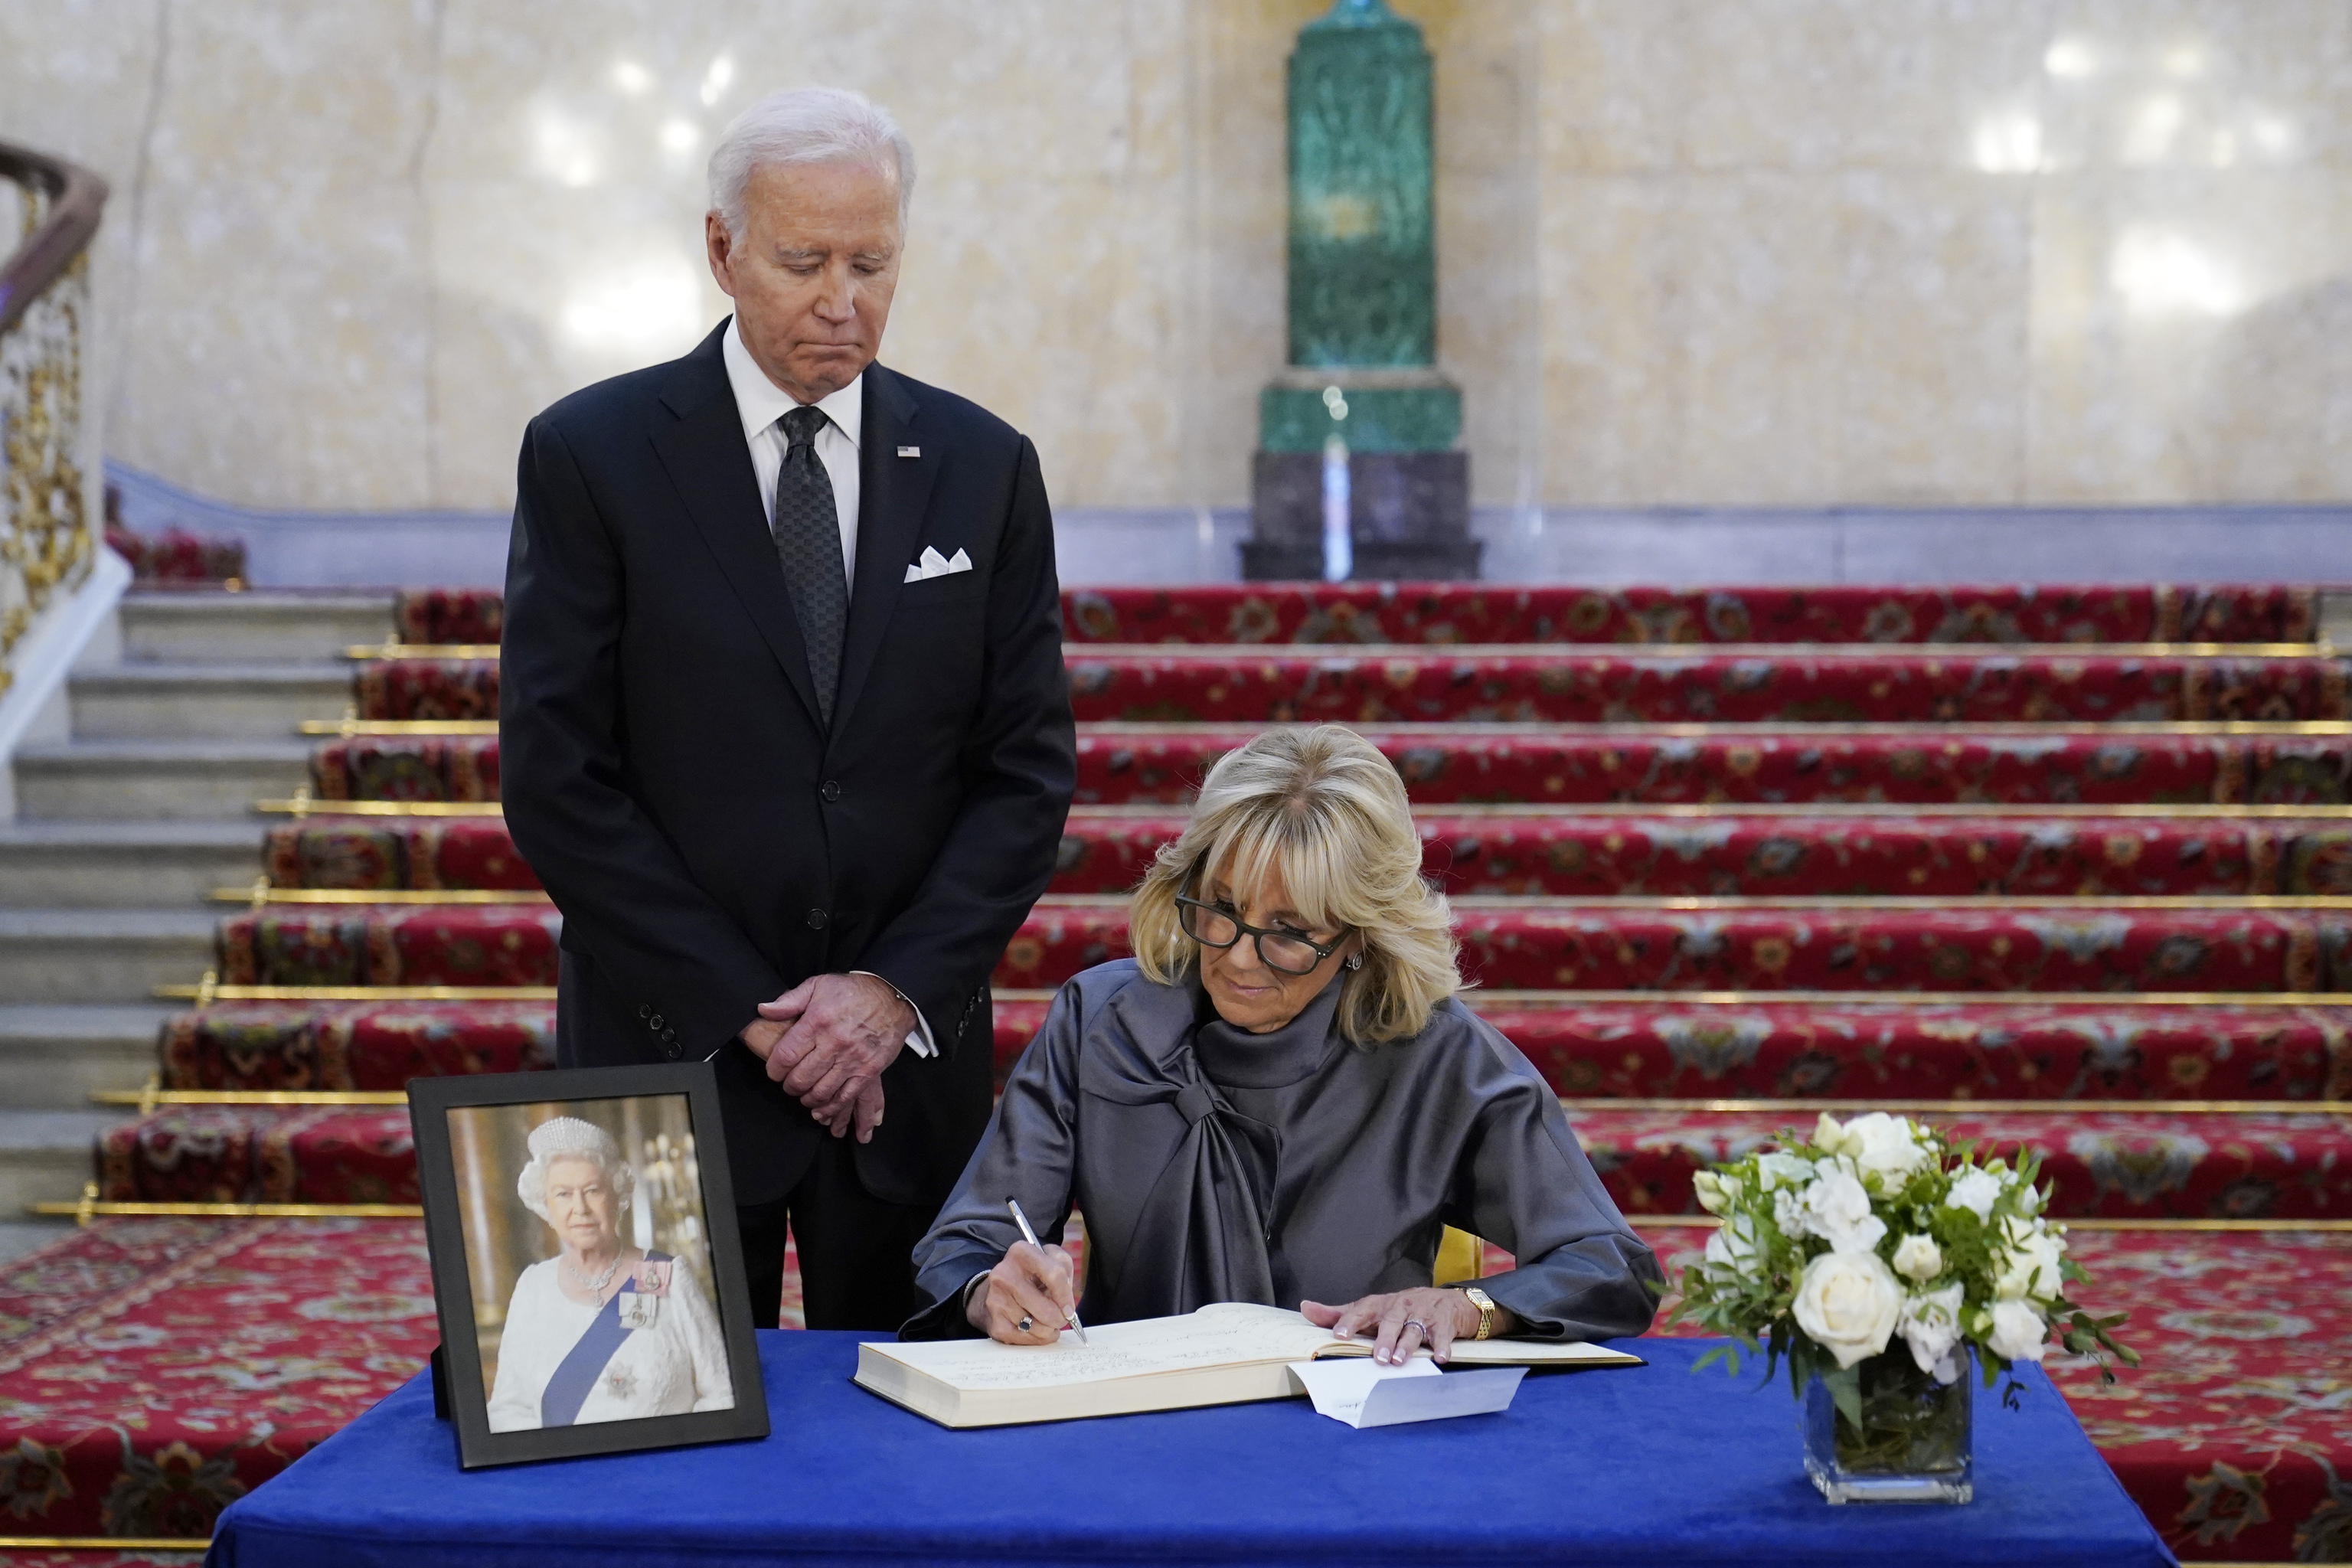 Joe y Jill Biden firman en el libro de condolencias de Lancaster House.